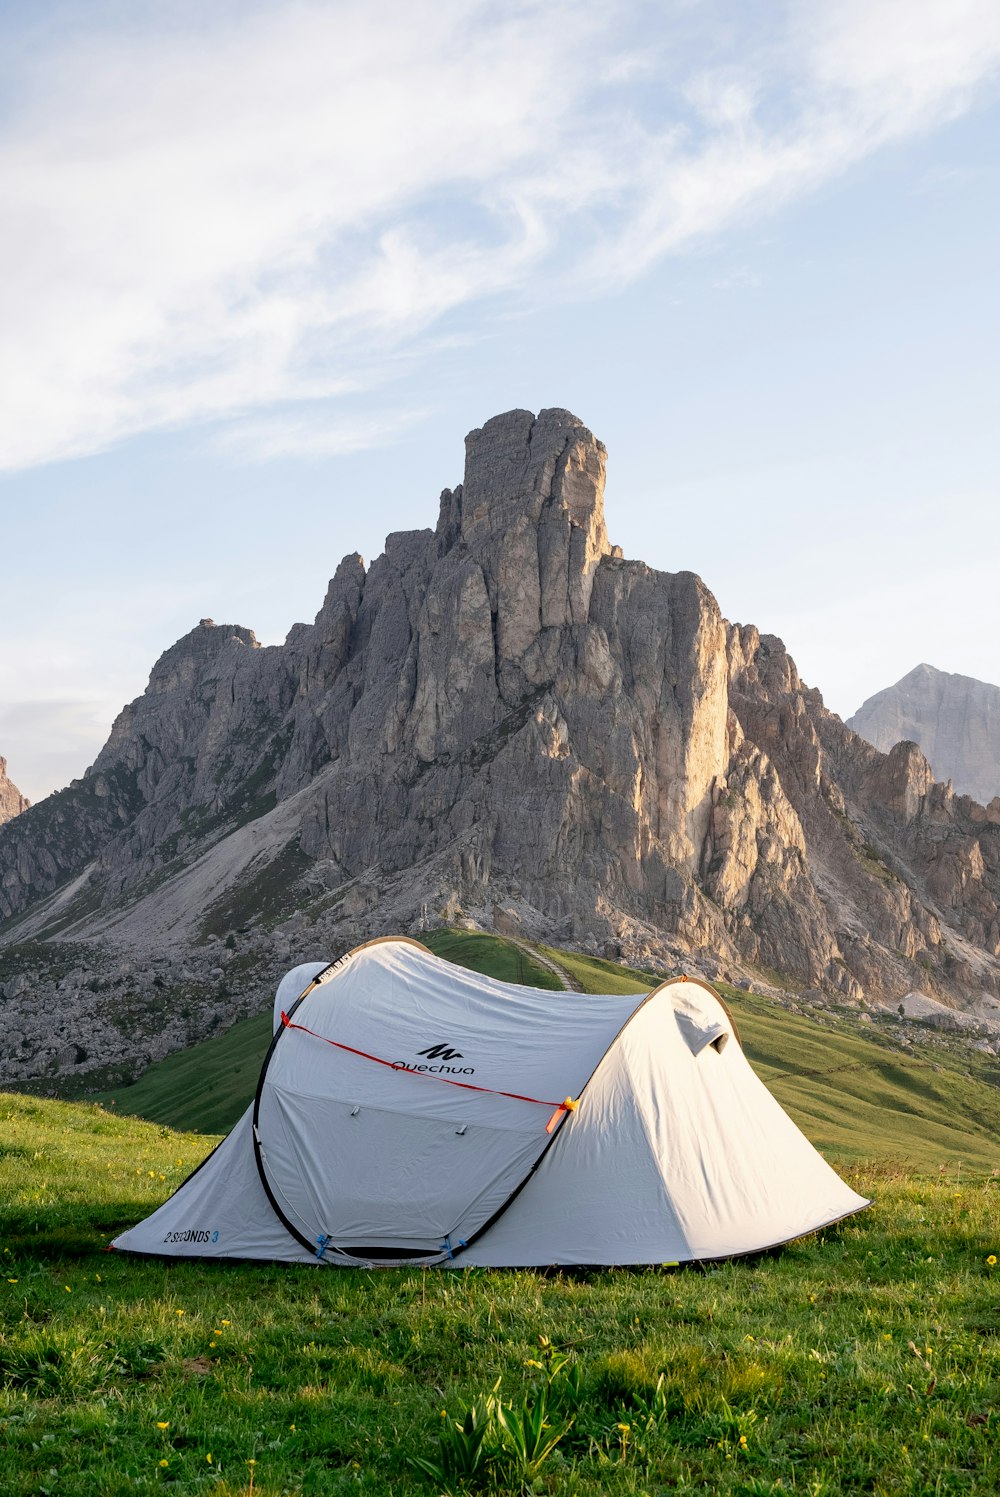 tenda bianca sul campo di erba verde vicino alla montagna rocciosa durante il giorno